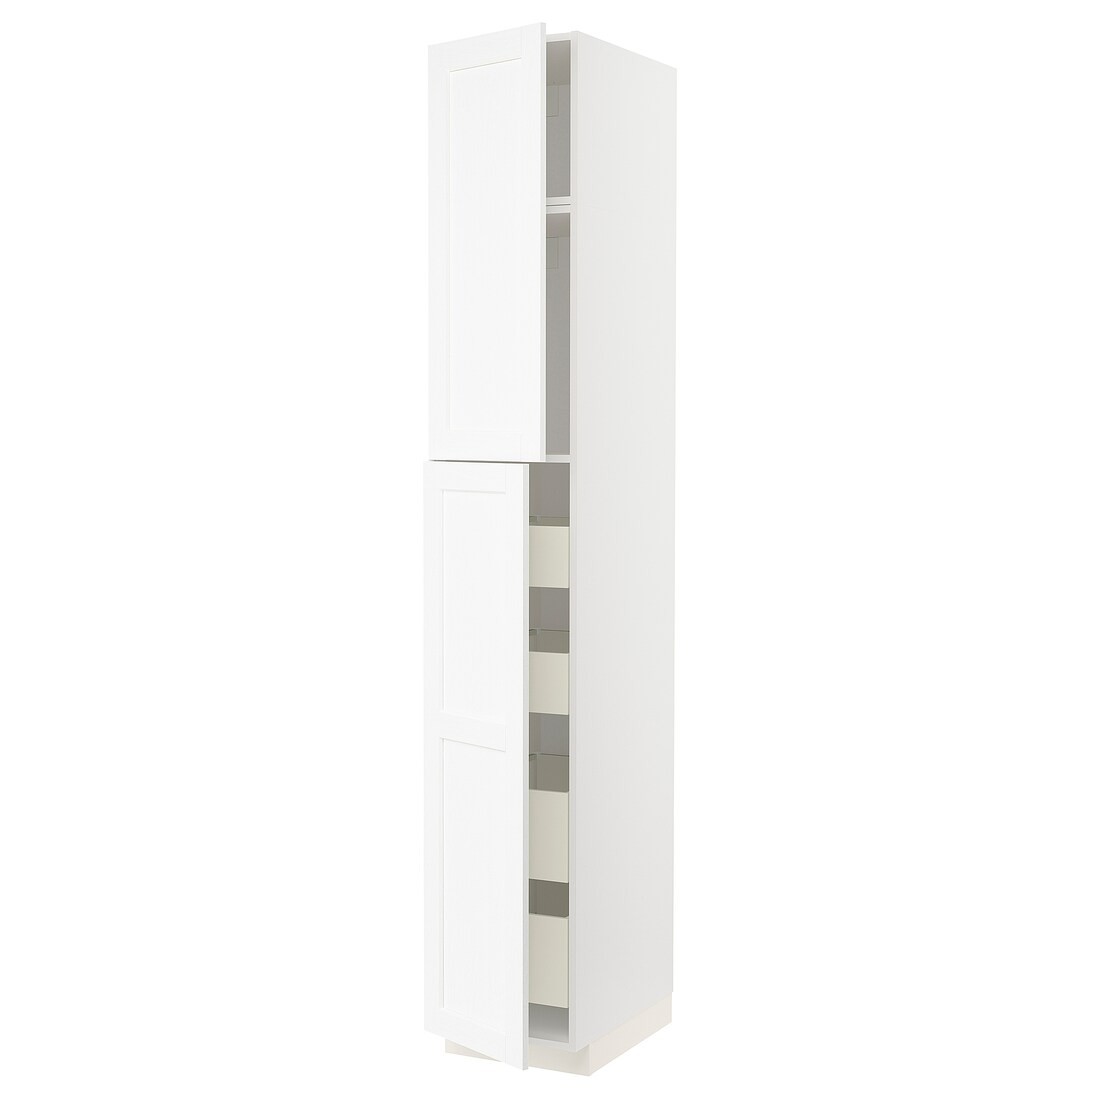 METOD МЕТОД / MAXIMERA МАКСИМЕРА Шкаф высокий 2 двери / 4 ящика, белый Enköping / белый имитация дерева, 40x60x240 см